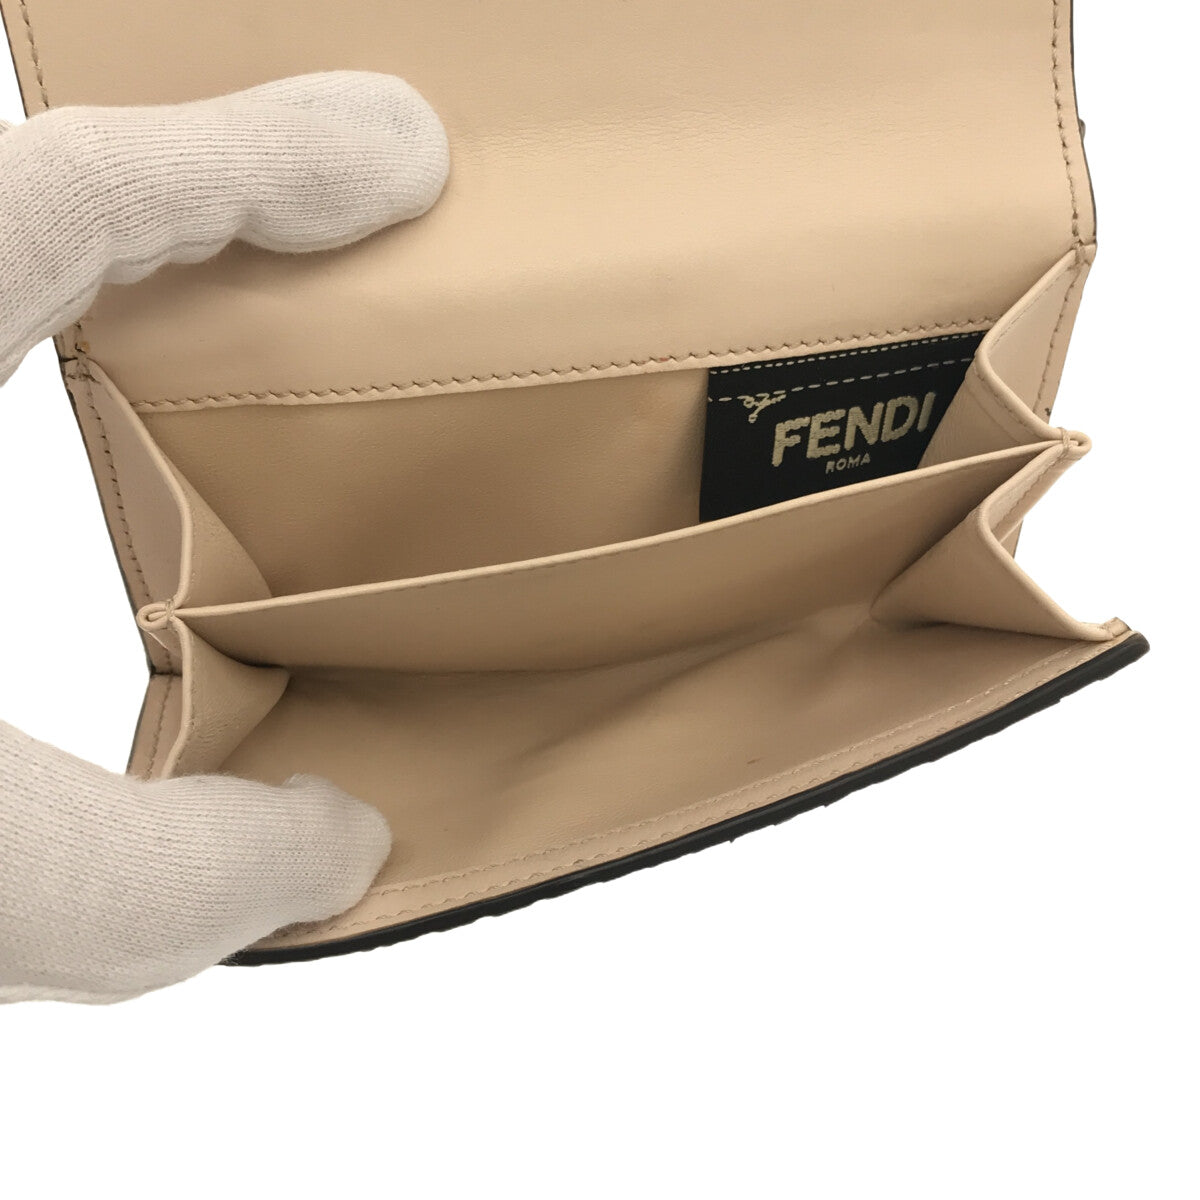 FENDI / フェンディ | ピーカブー パイソン レザー ウォレット 財布 |